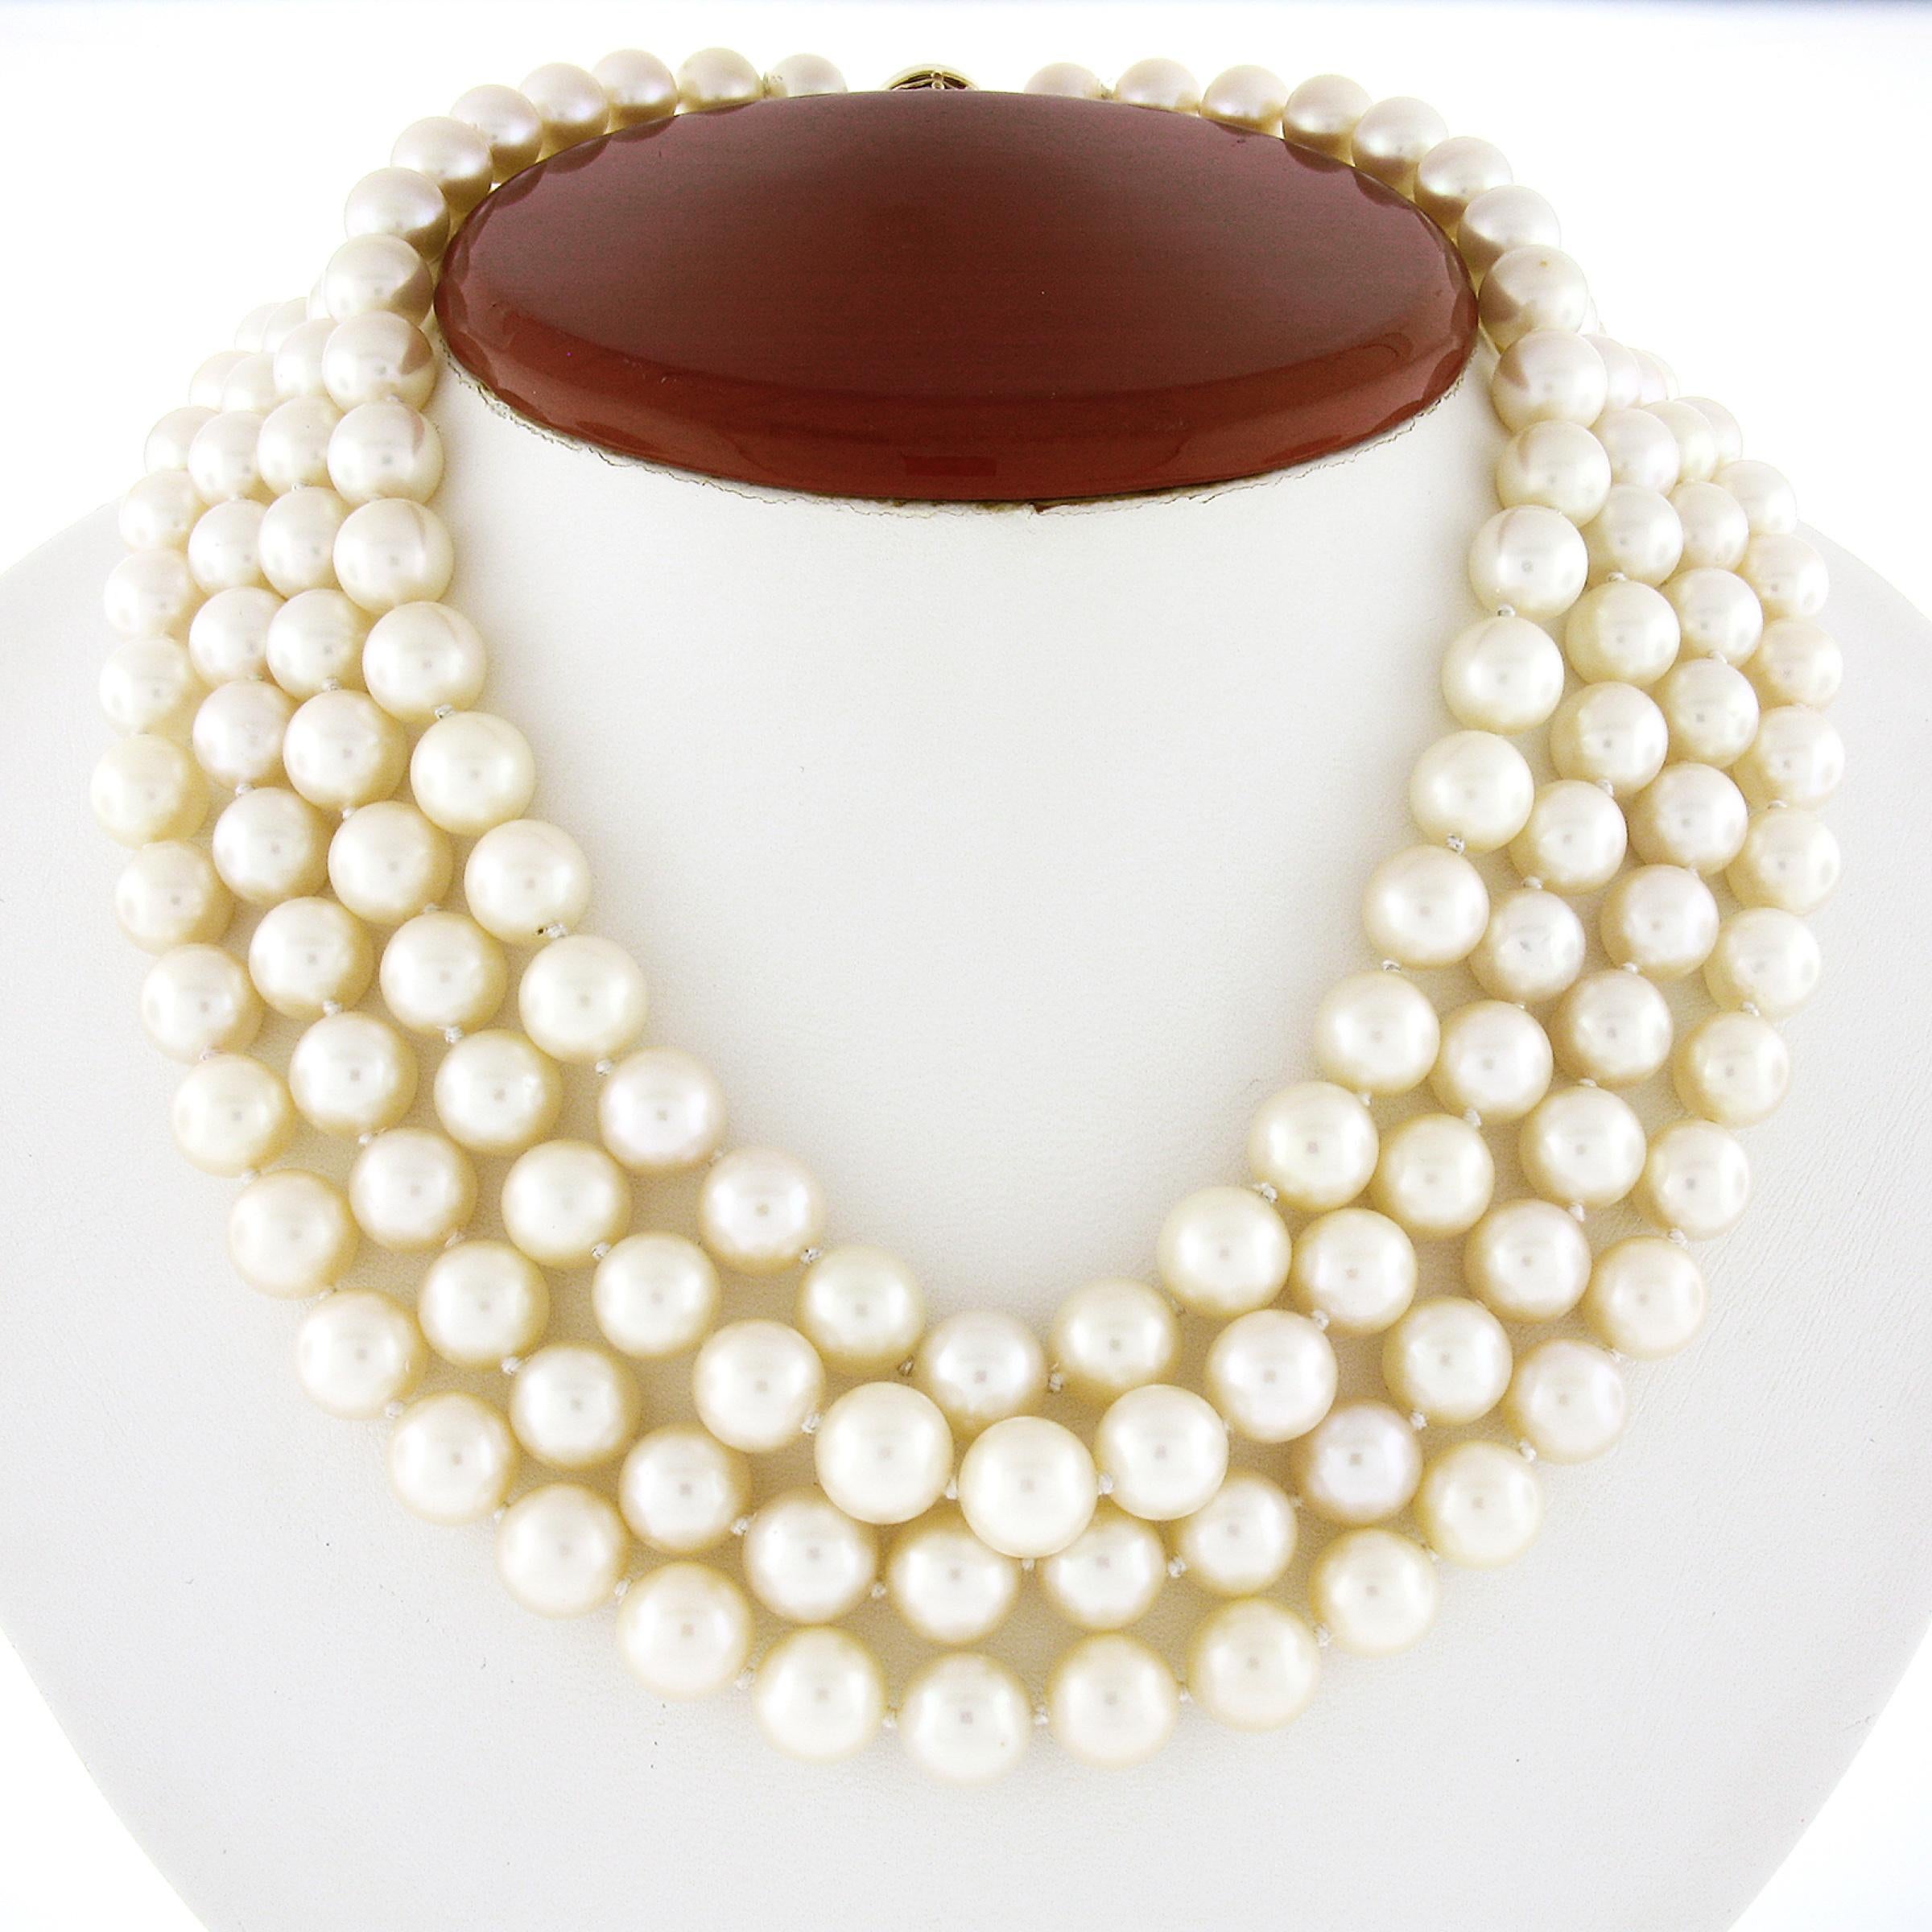 Diese wunderschöne Vintage-Halskette wurde von Tambetti entworfen und verfügt über 4 Stränge aus Zuchtperlen, die elegant aufgereiht sind. Diese schönen Perlen haben eine leichte Größenabstufung von 8,5-9,5 mm, wobei die größte in der Mitte der